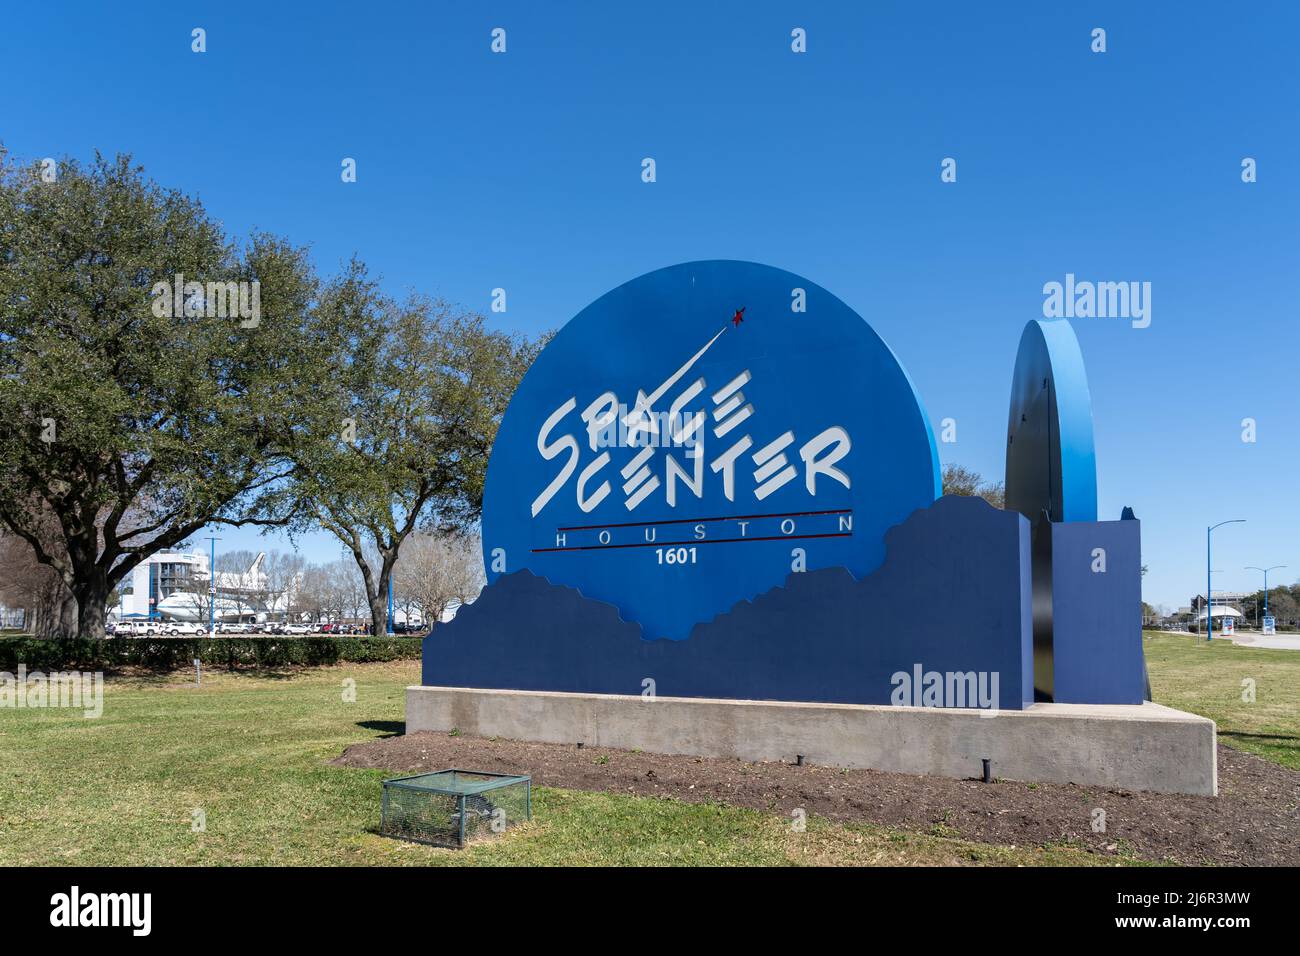 Houston, TX, USA - 12. März 2022: Space Center Houston-Schild ist am 12. März 2022 zu sehen. Space Center Houston ist ein Wissenschafts- und Weltraumzentrum. Stockfoto